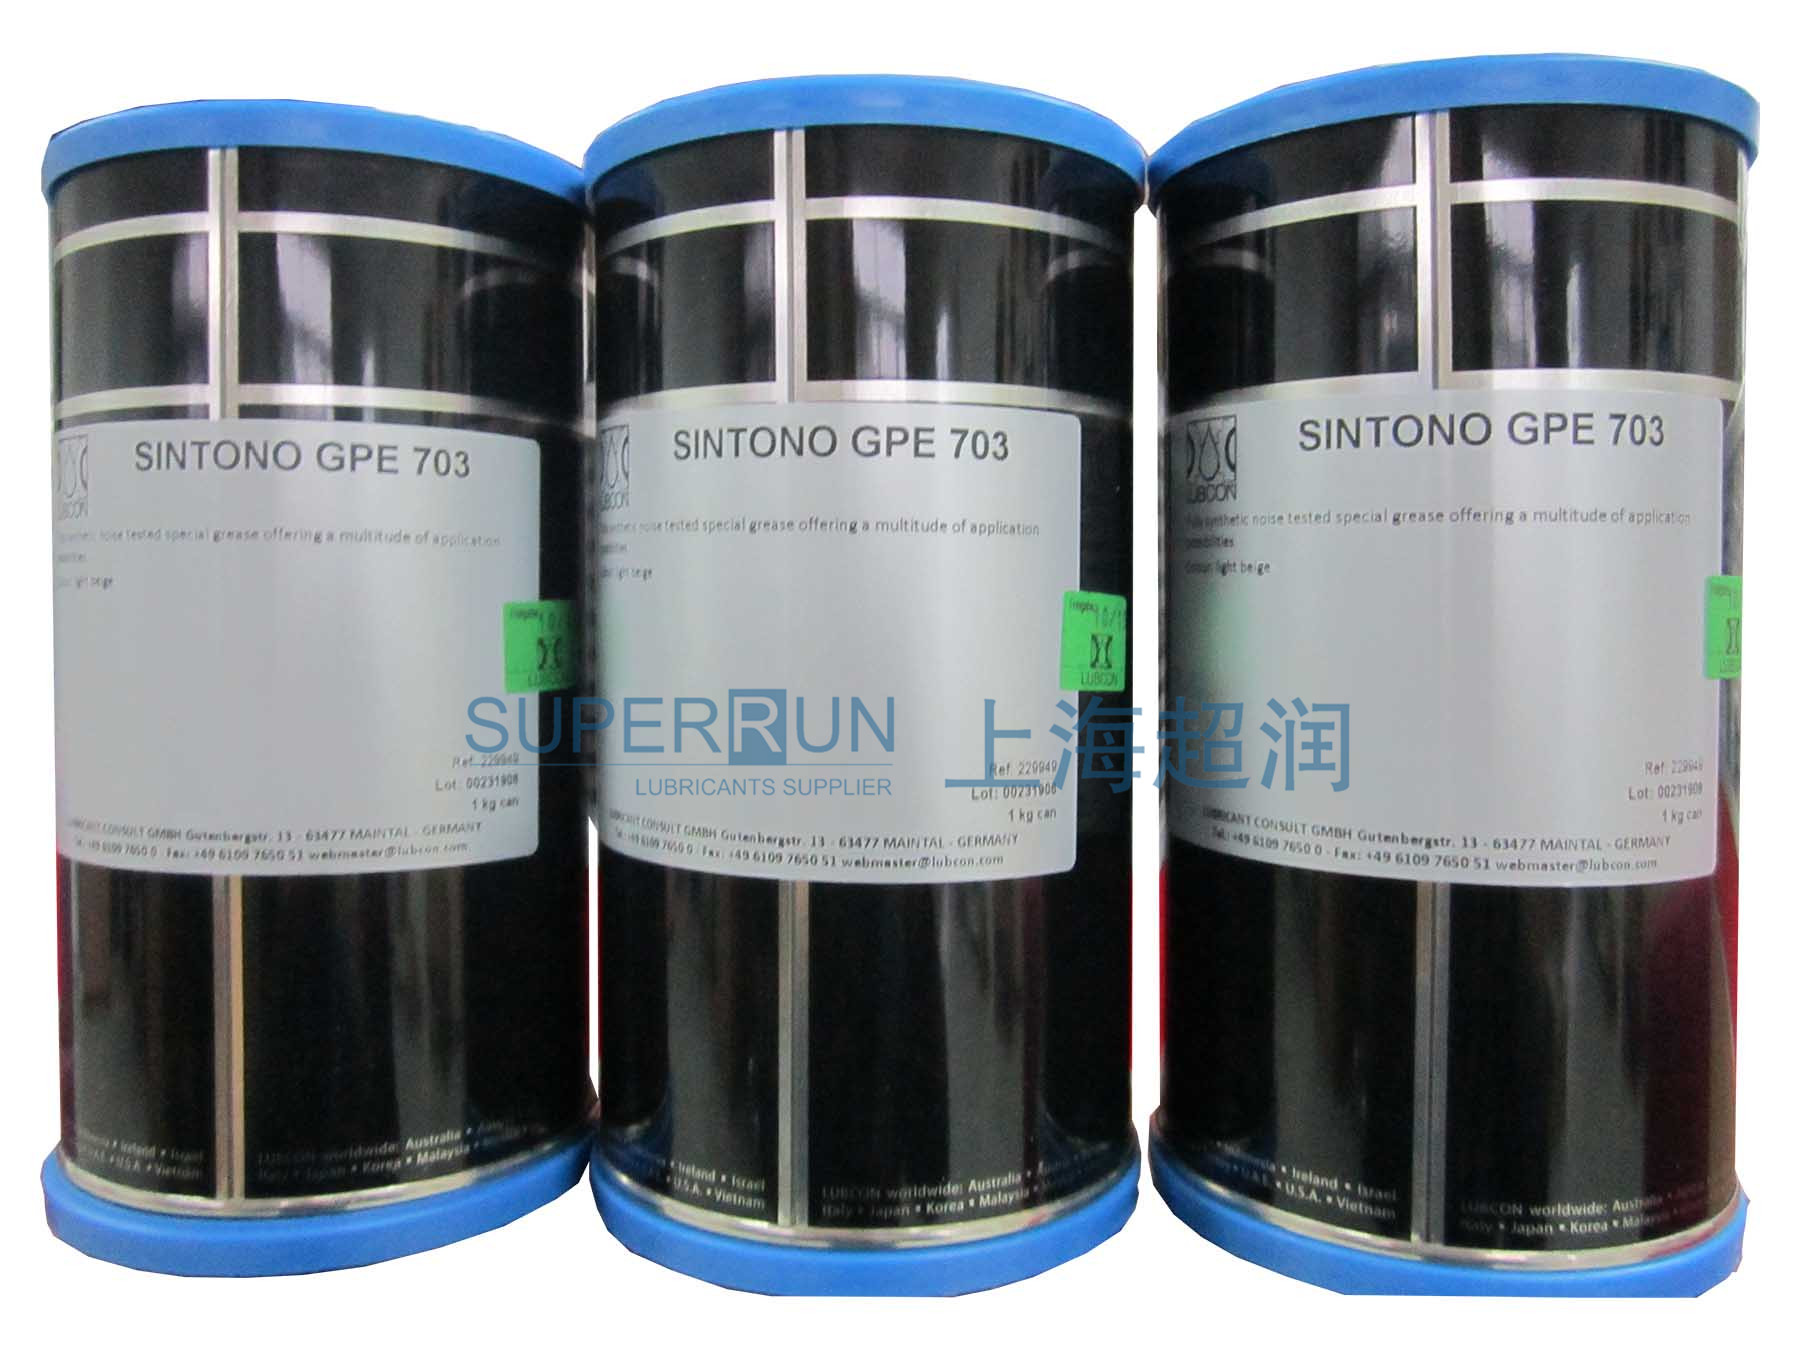 勞博抗 LUBCON TURMOTEMP LP 5002高溫潤滑劑